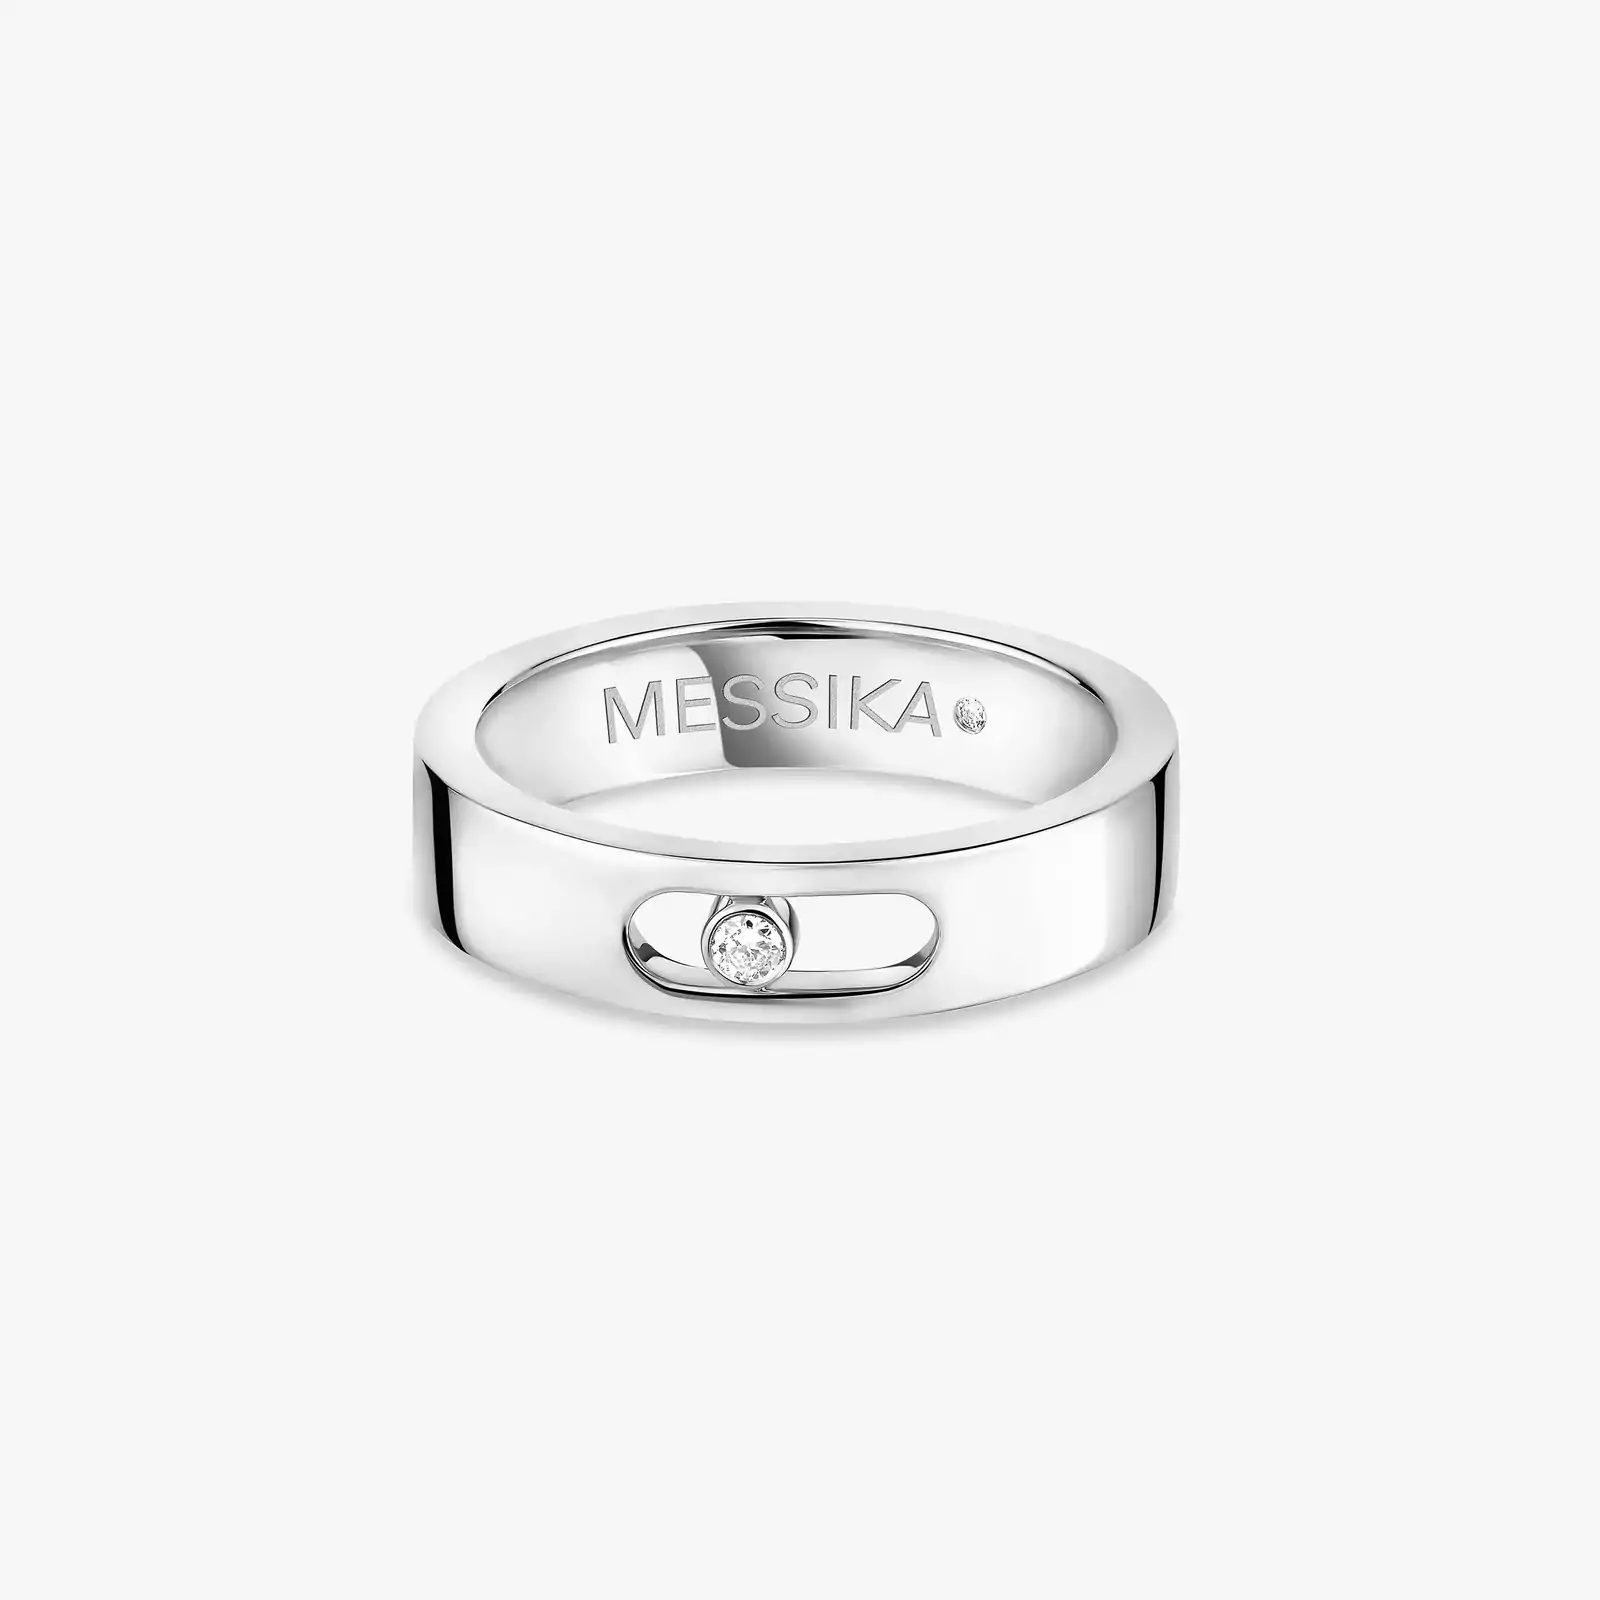 Move Joaillerie Wedding Ring White Gold For Her Diamond Ring 13553-WG